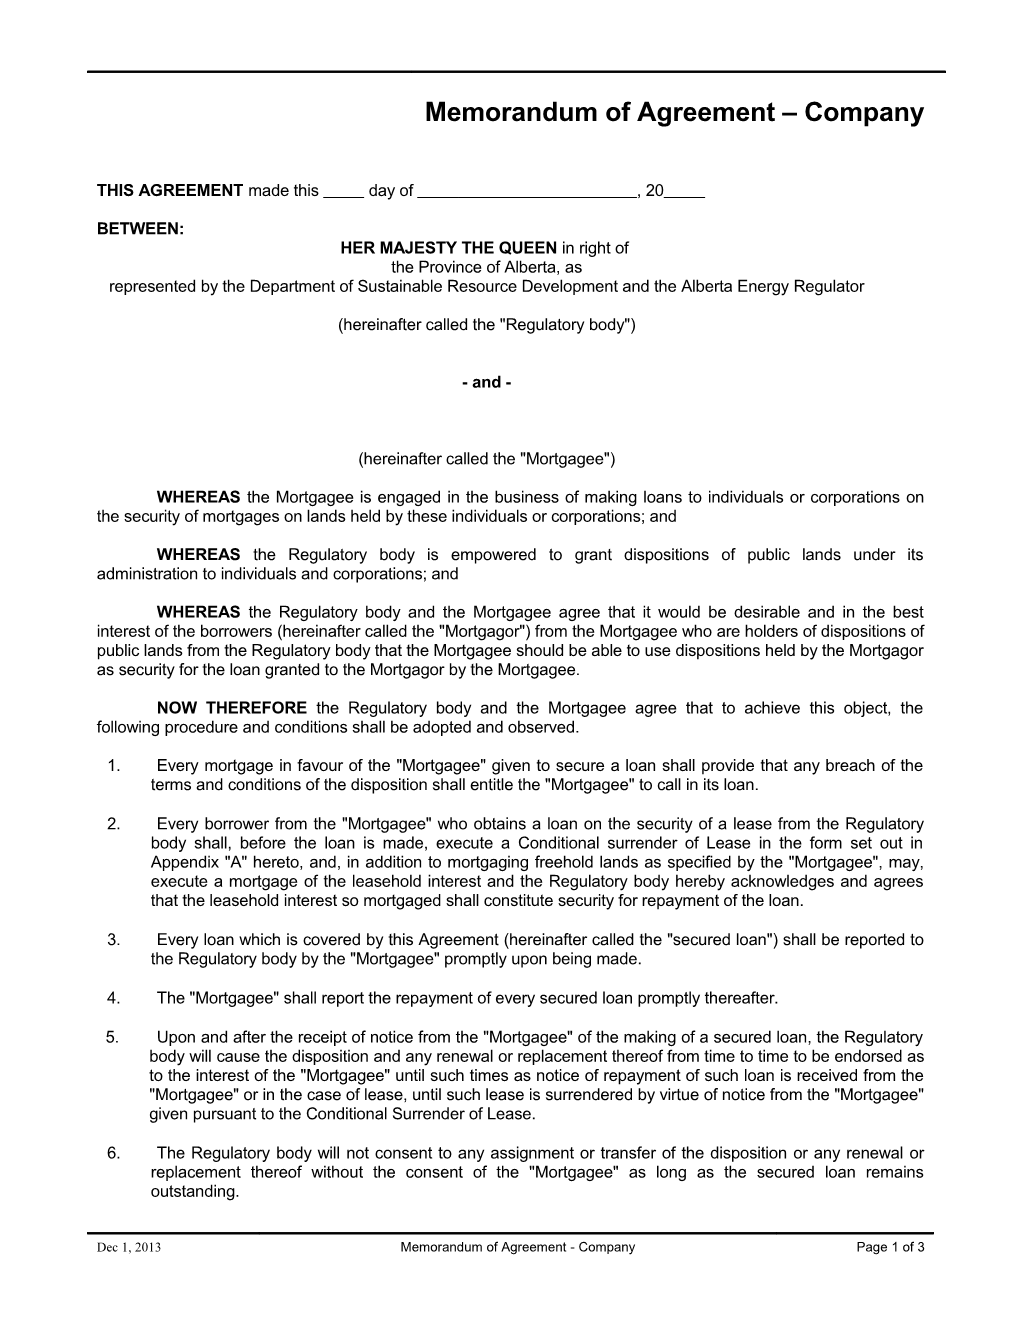 Memorandum of Agreement Company Form